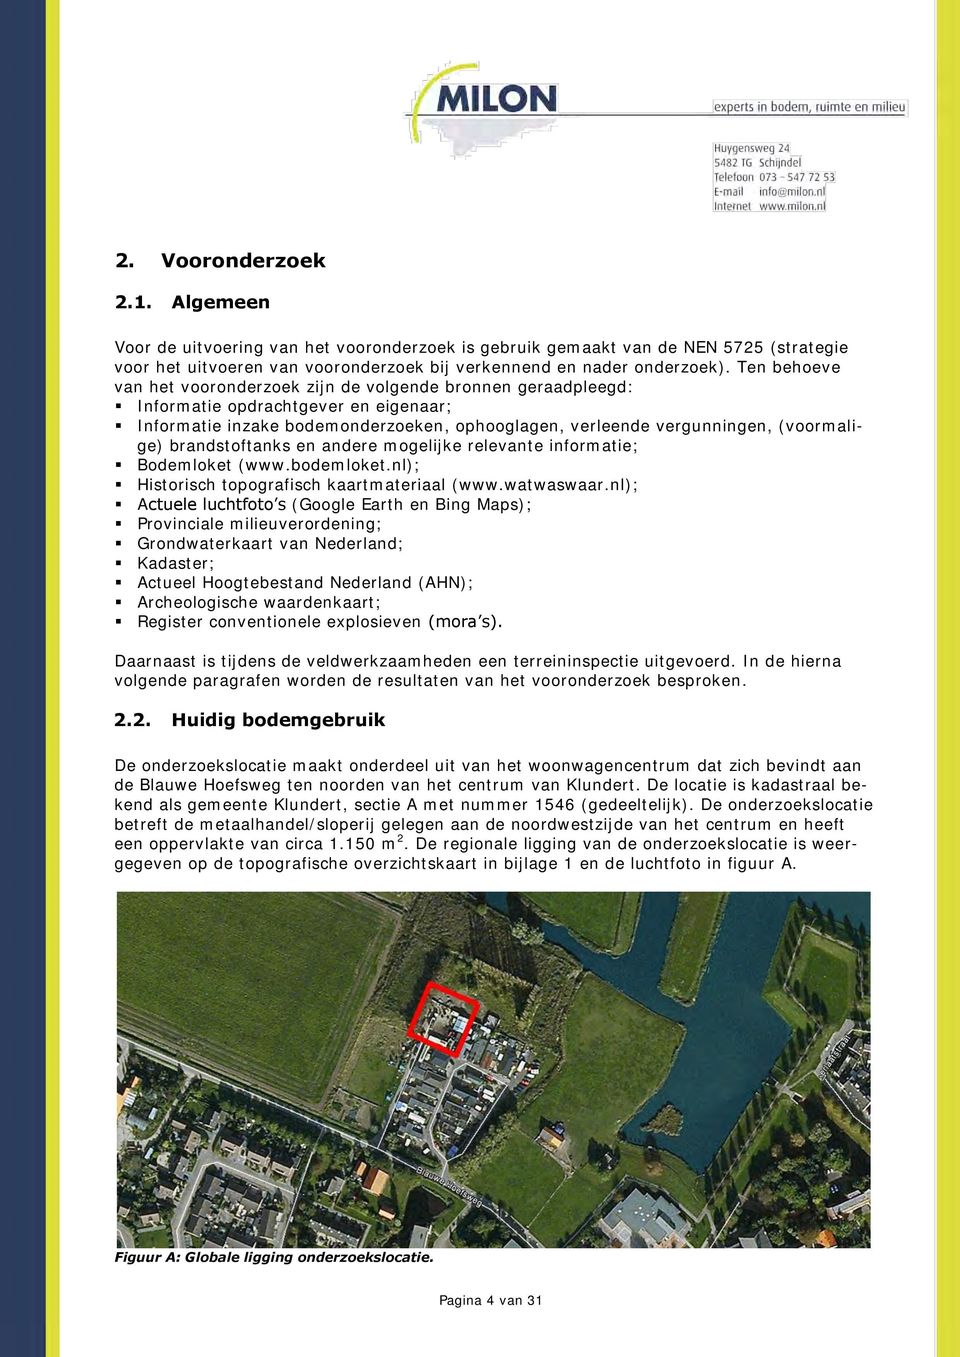 brandstoftanks en andere mogelijke relevante informatie; Bodemloket (www.bodemloket.nl); Historisch topografisch kaartmateriaal (www.watwaswaar.